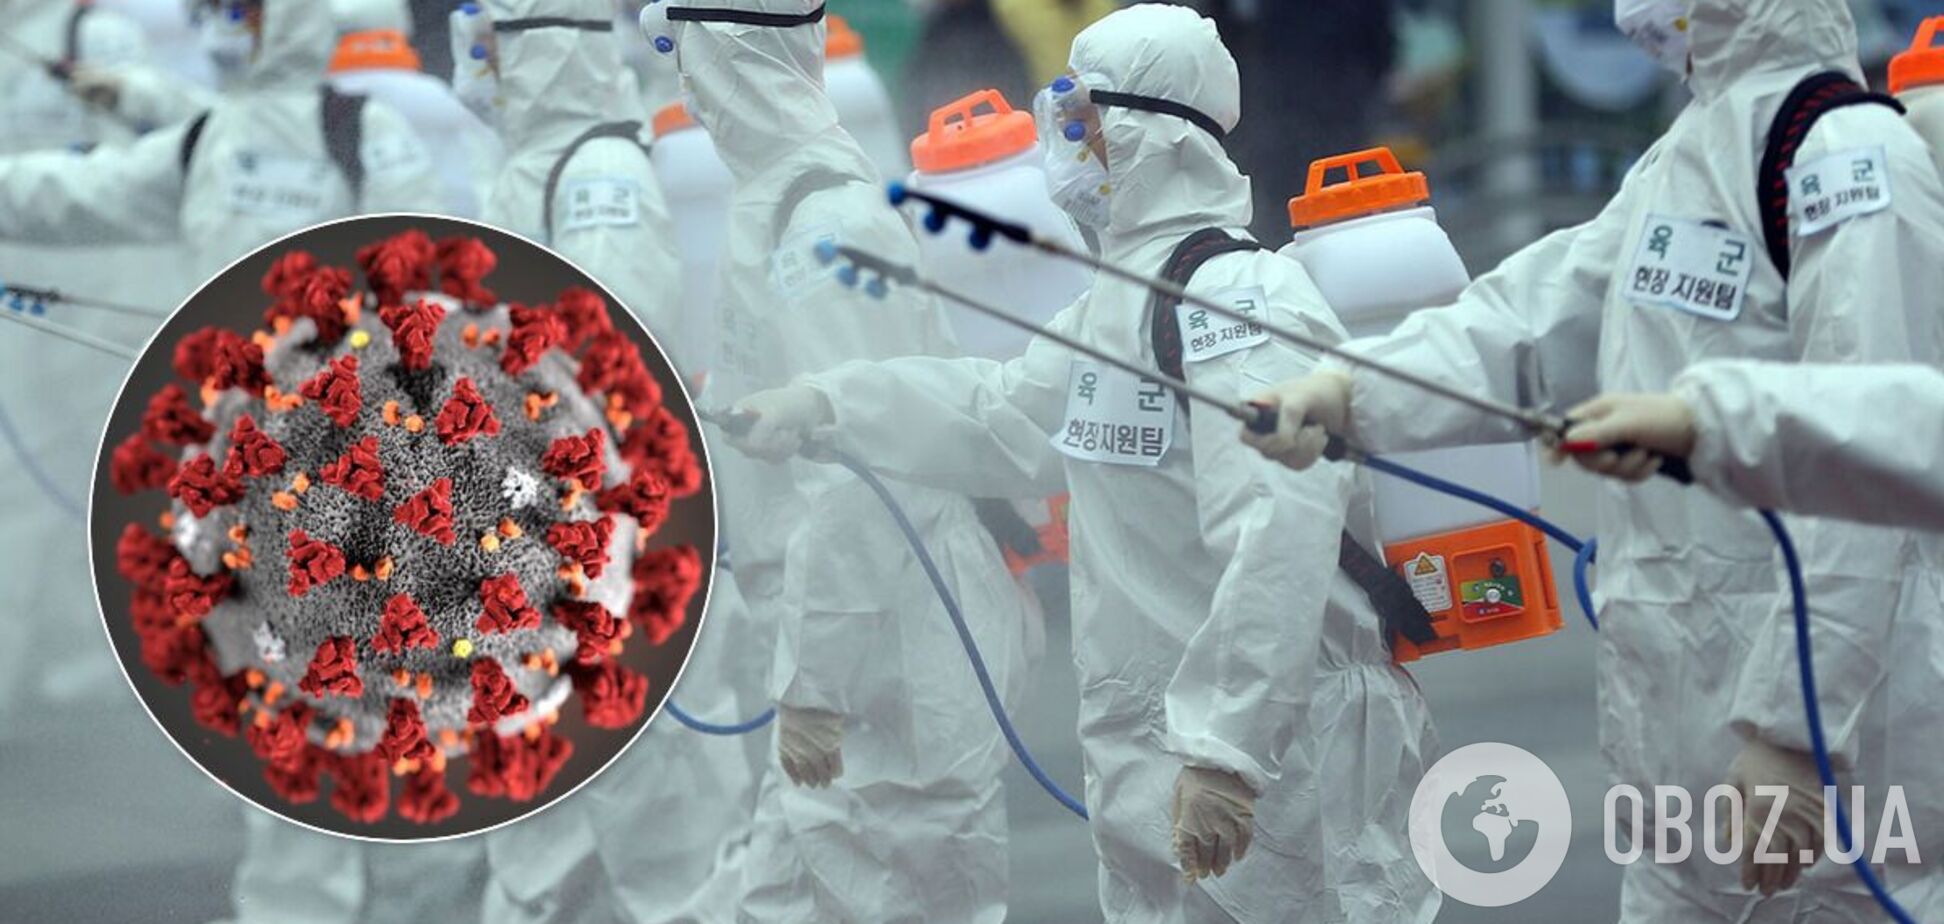 Інфекціоніст дав прогноз щодо термінів епідемії коронавірусу в Україні